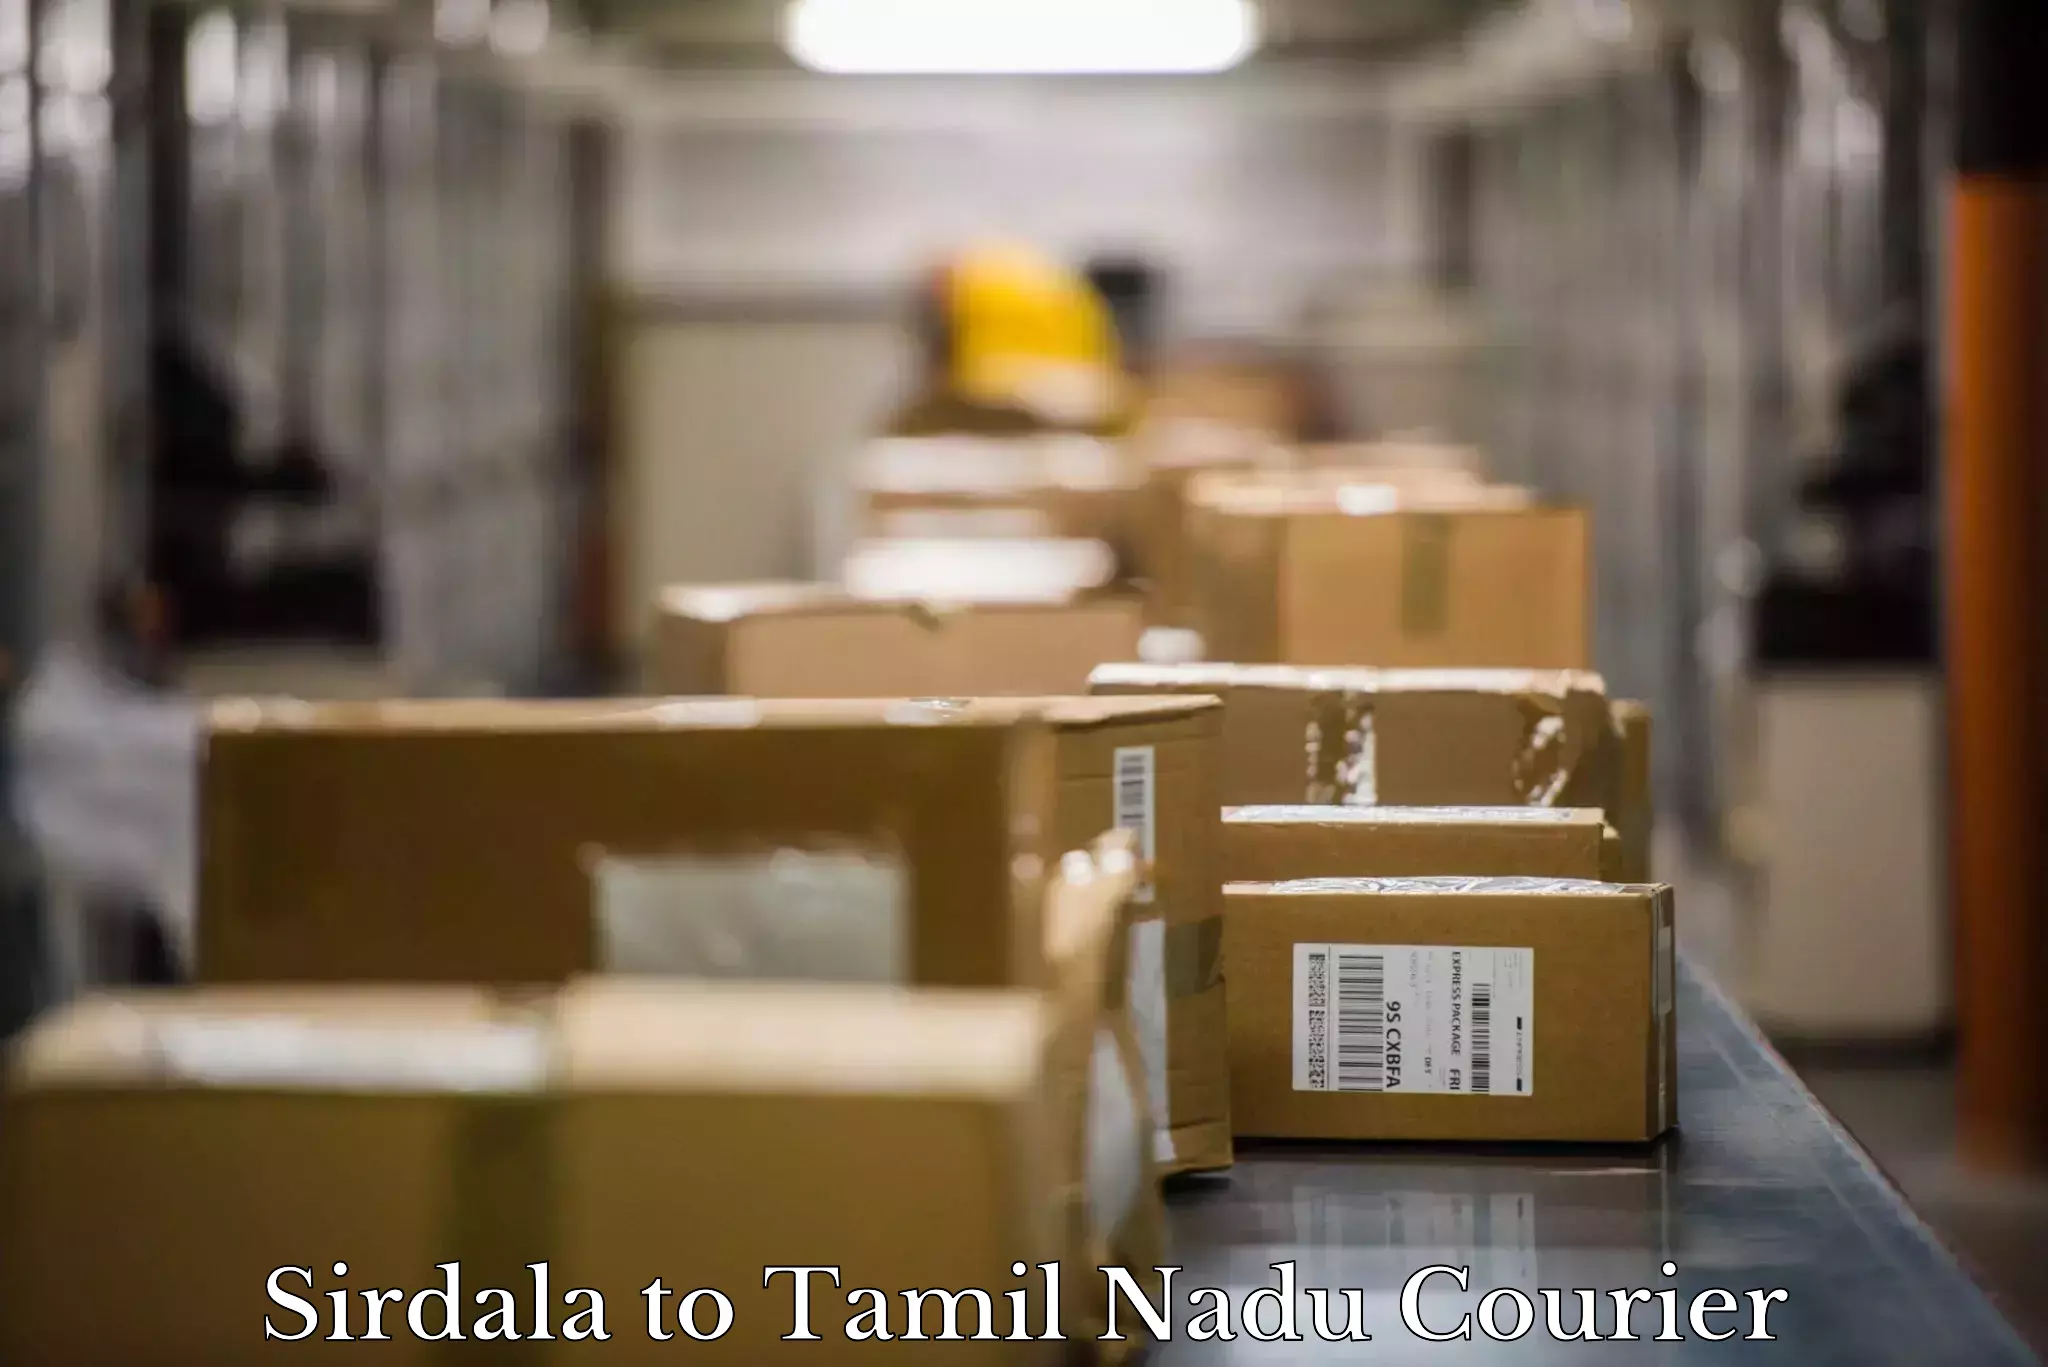 Furniture moving experts Sirdala to Thiruvadanai